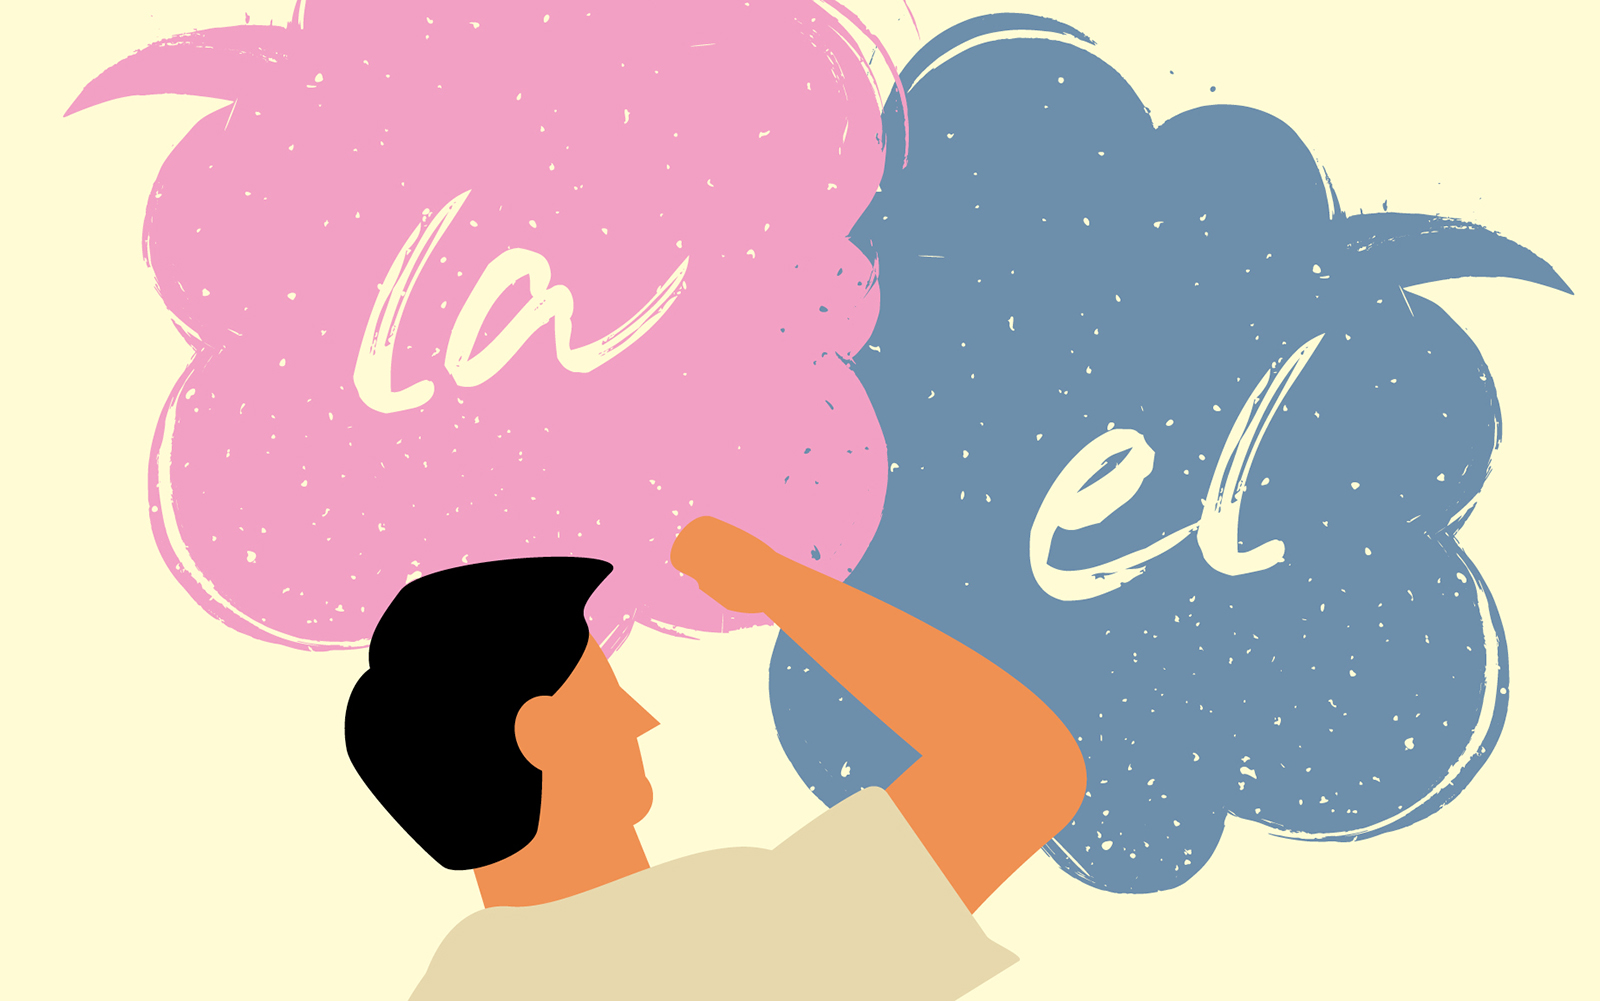 Hisplaining: The Spanish-Language Gender Headache